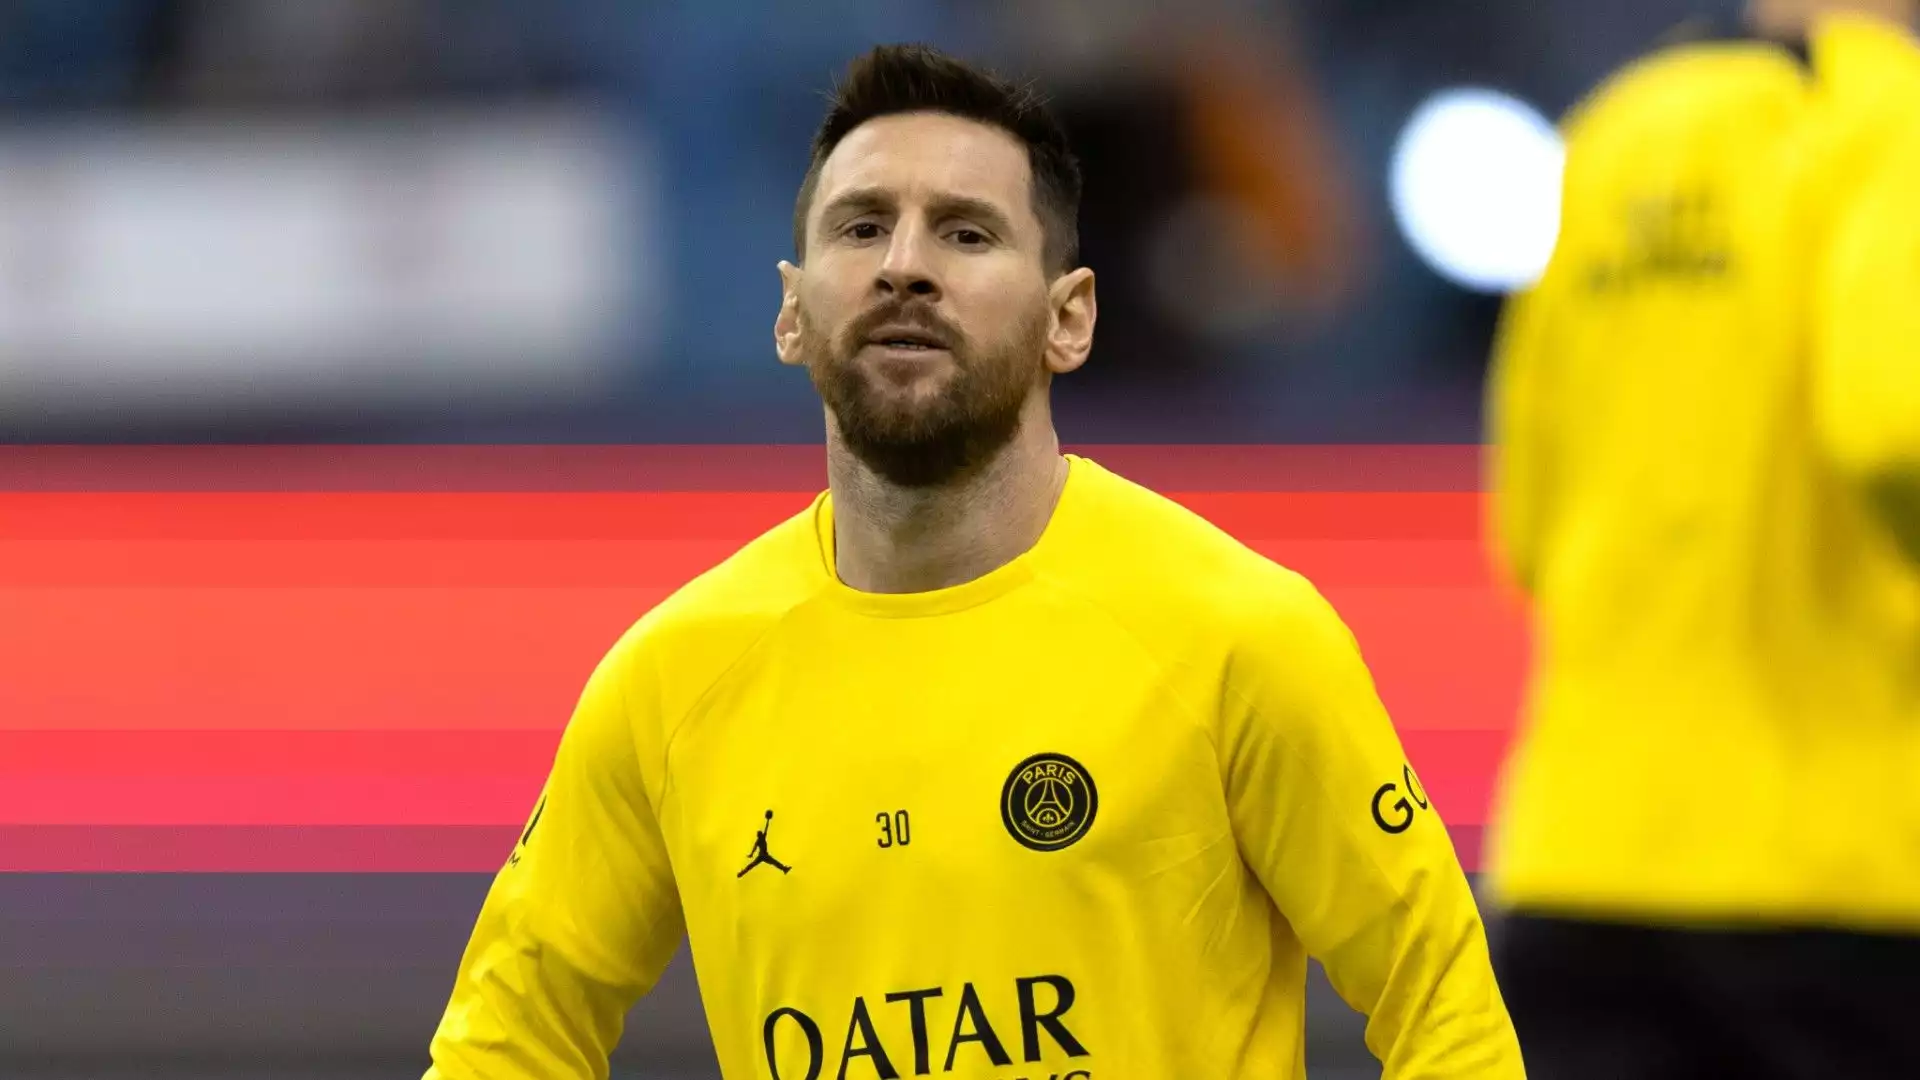 Nelle scorse settimane tantissimi campioni ed ex campioni hanno difeso Lionel Messi